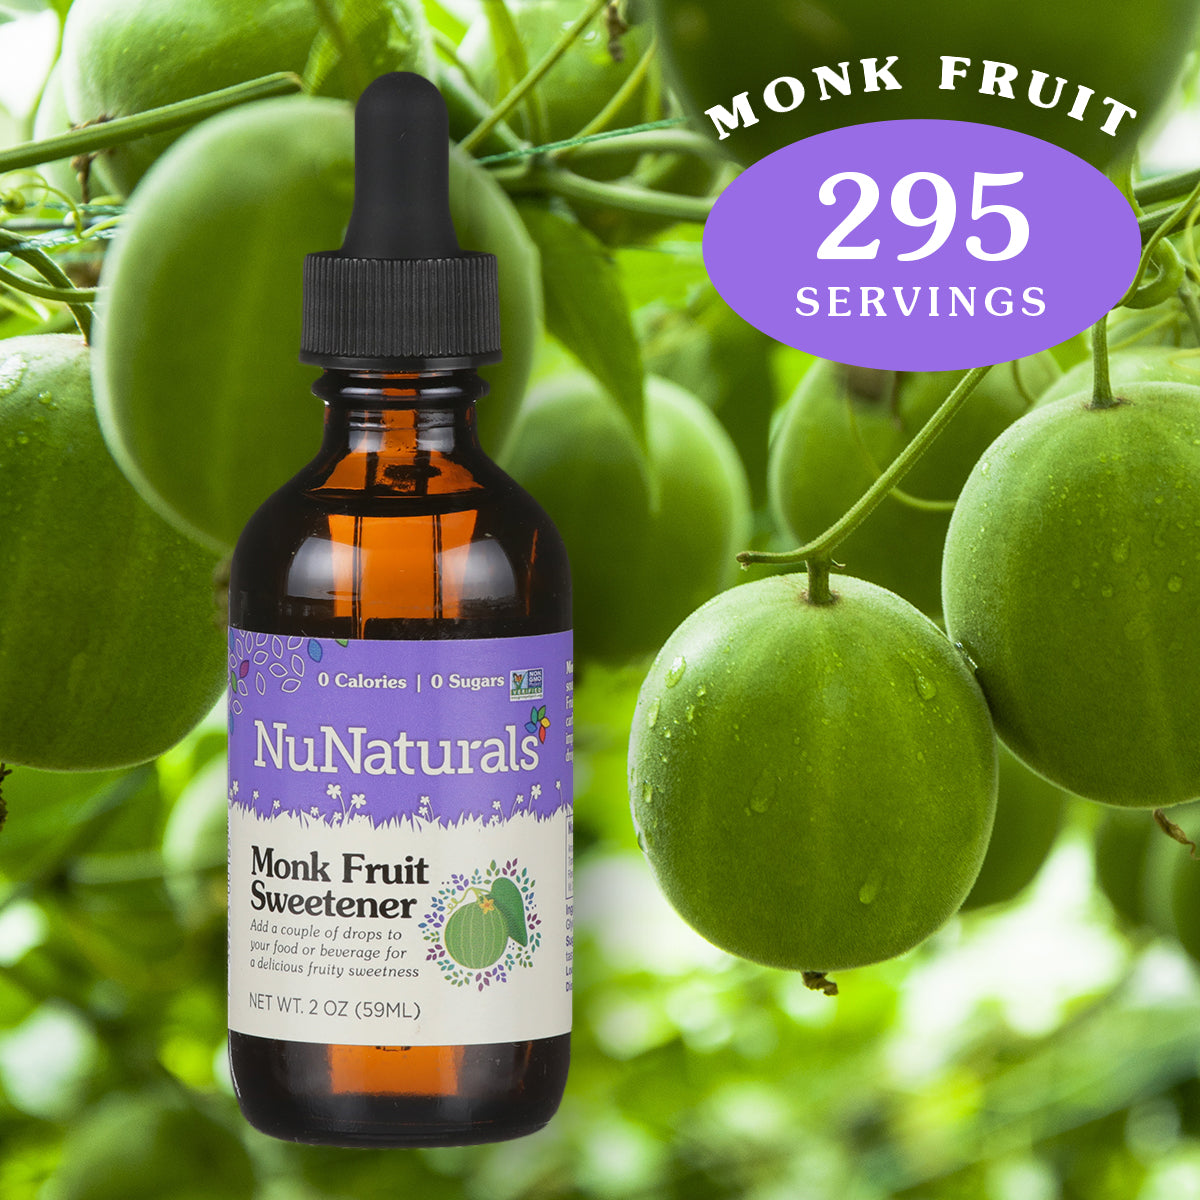 2 oz. NuNaturals Monk Fruit Sweetener